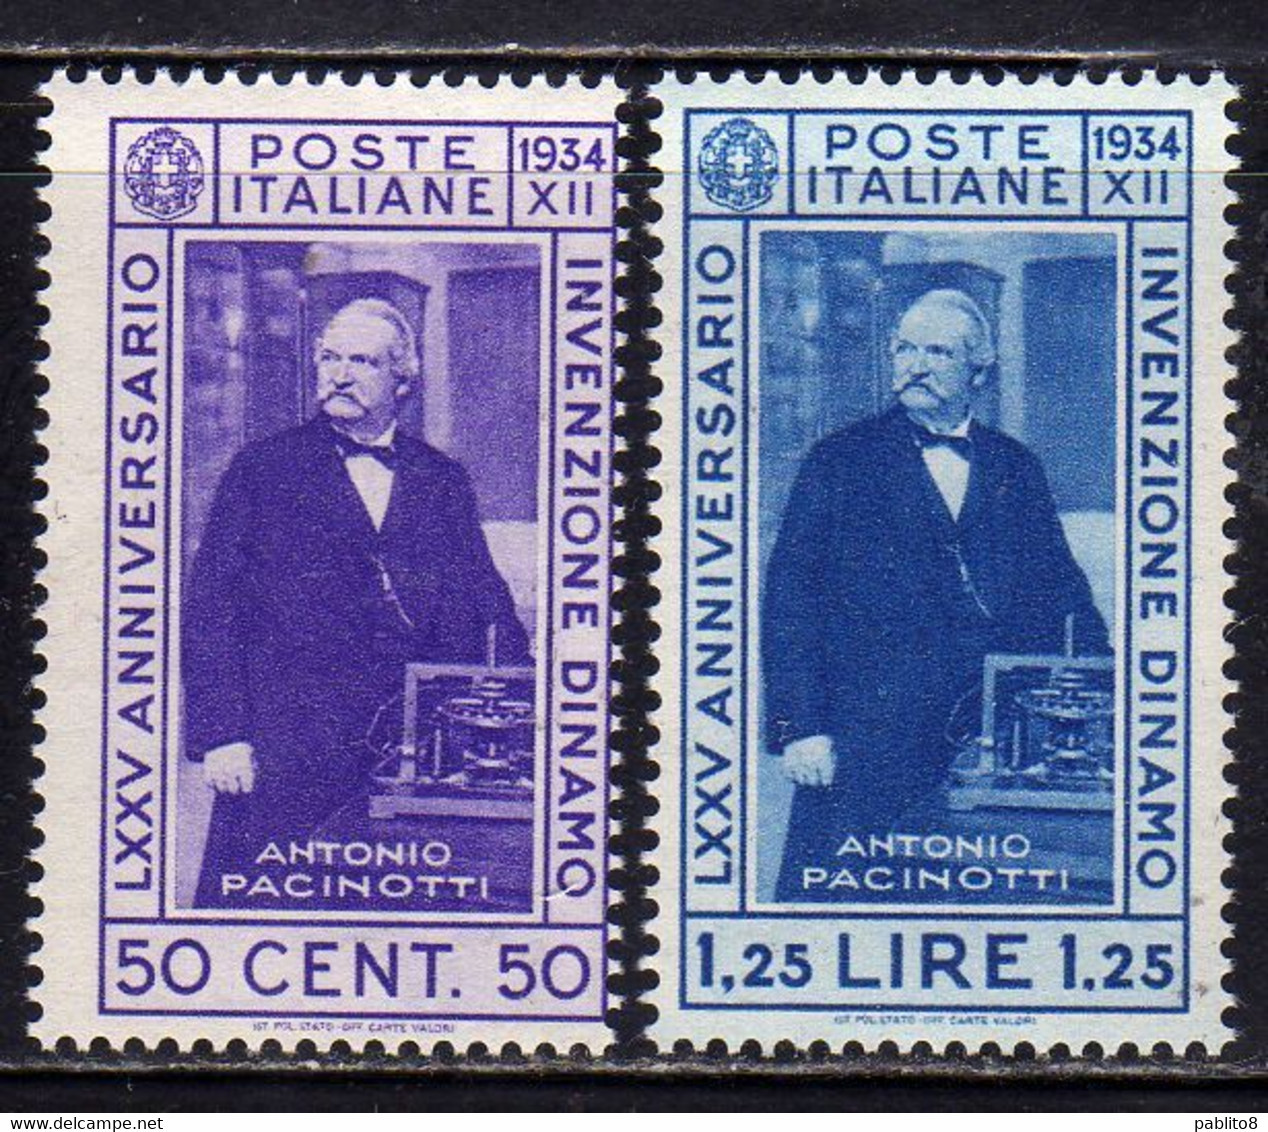 ITALIA REGNO ITALY KINGDOM 1934 INVENZIONE DELLA DINAMO PACINOTTI SERIE COMPLETA COMPLETE SET MNH - Neufs